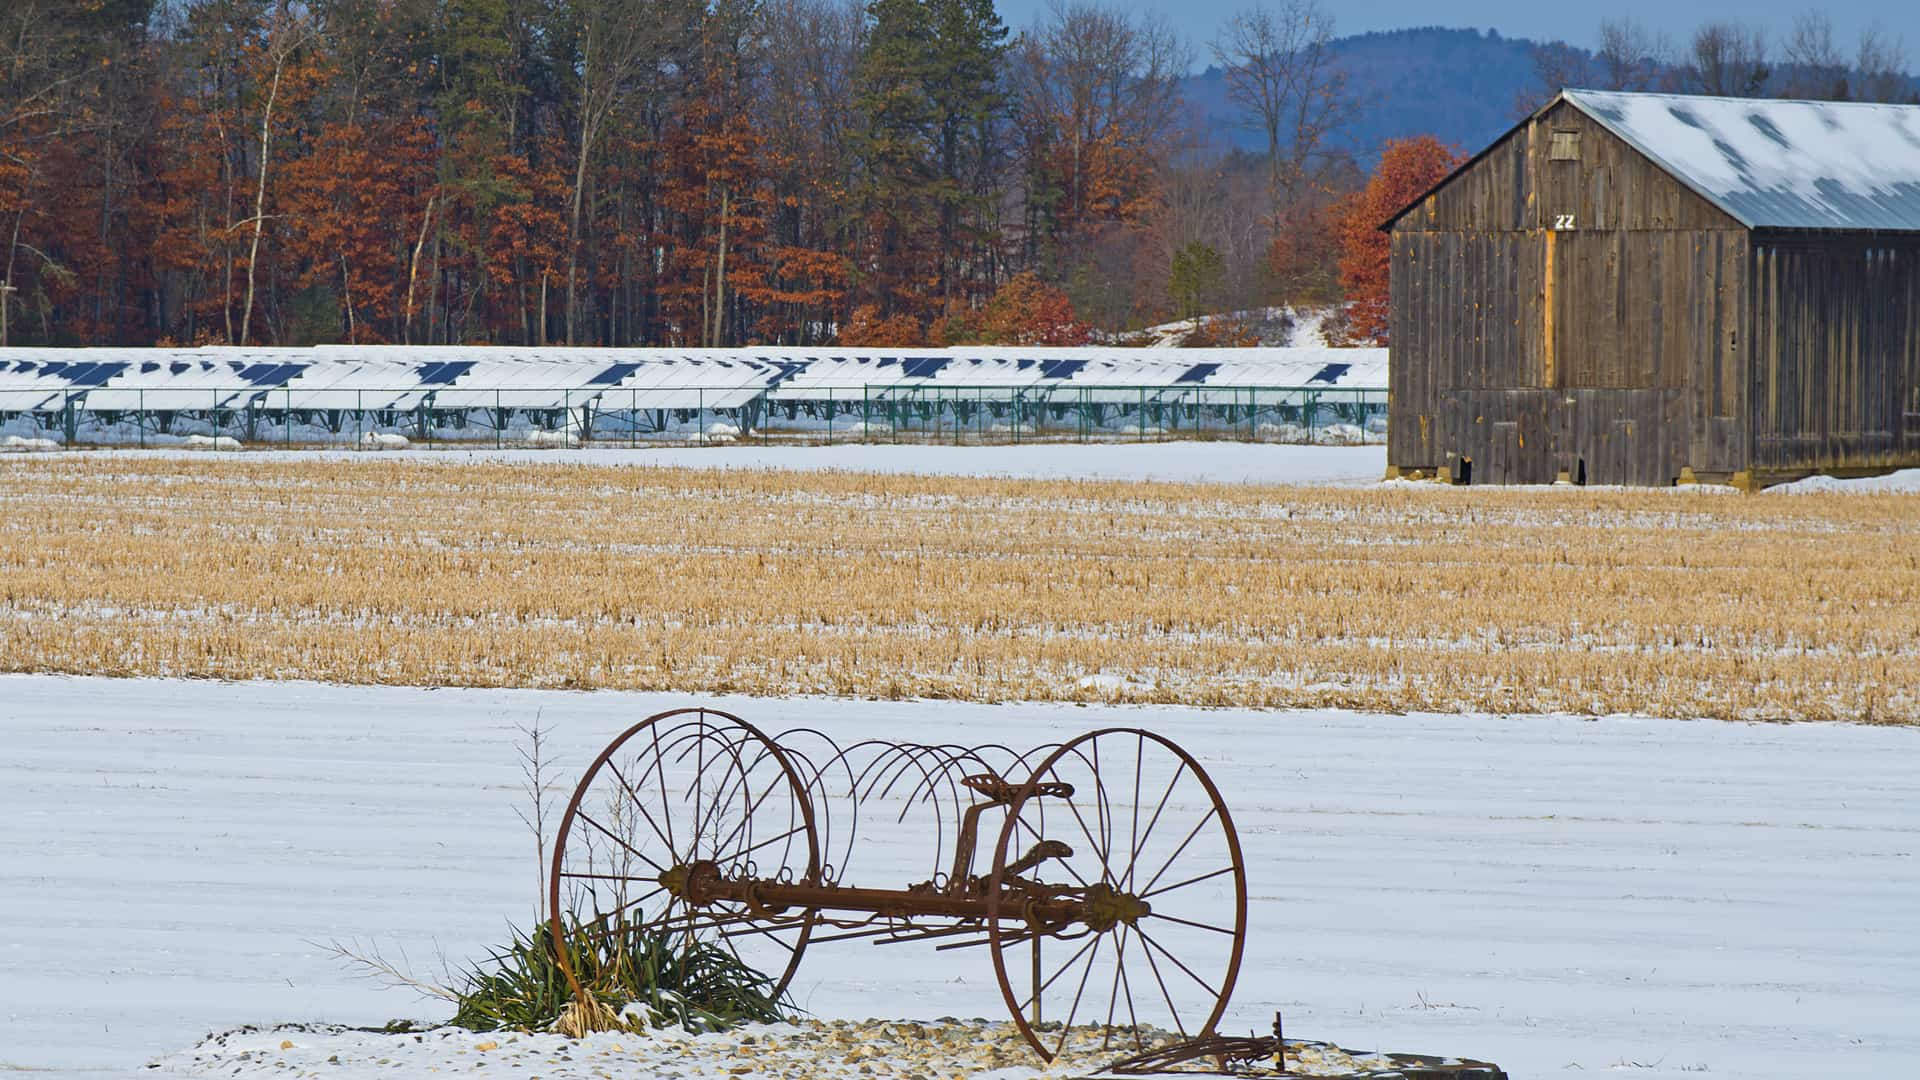 farm field in winter with rusty plow